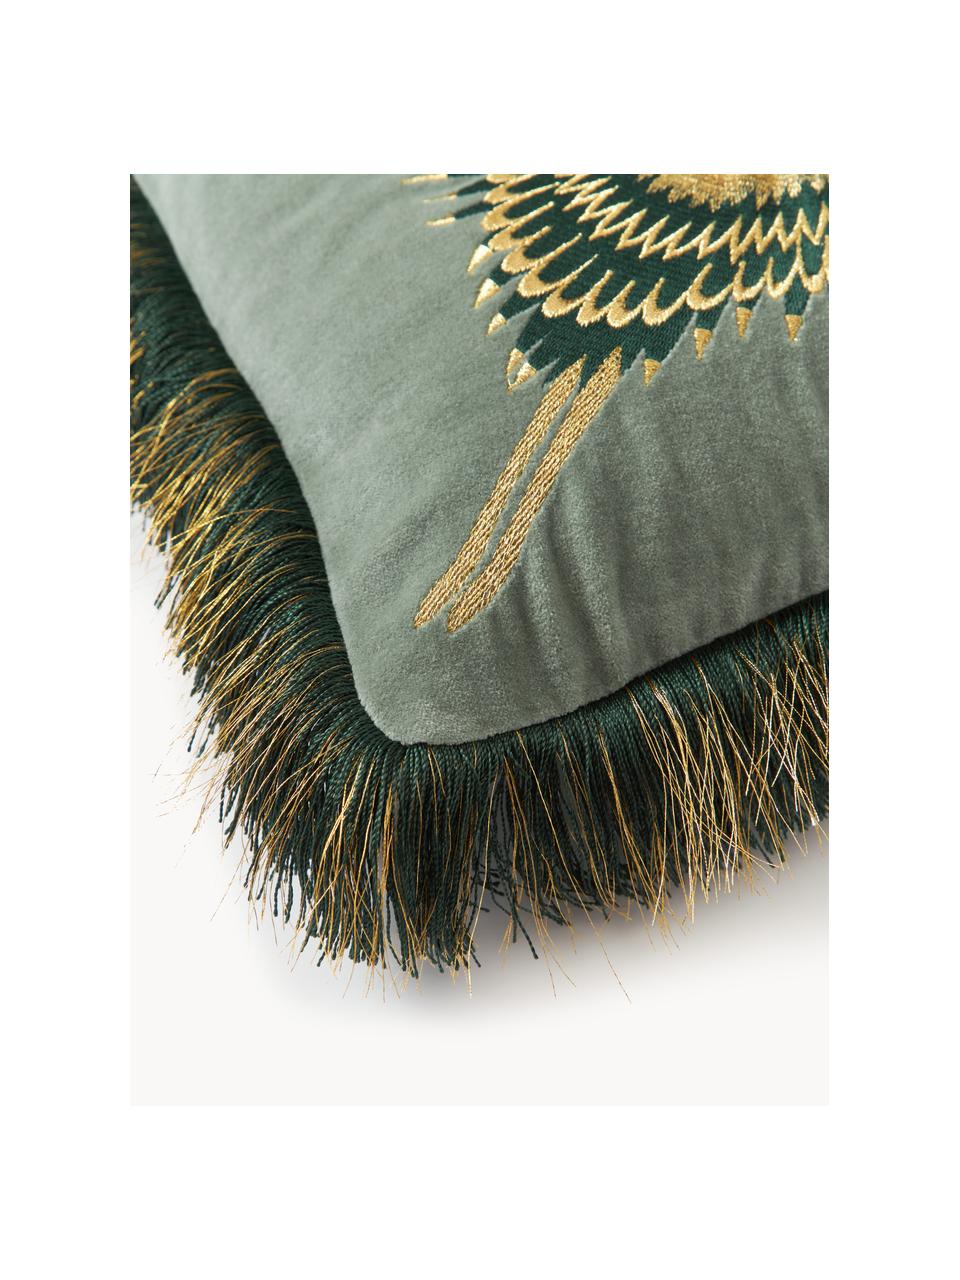 Poszewka na poduszkę z aksamitu z haftem Onyx, Szałwiowa zieleń, ciemny zielony, S 40 x D 40 cm